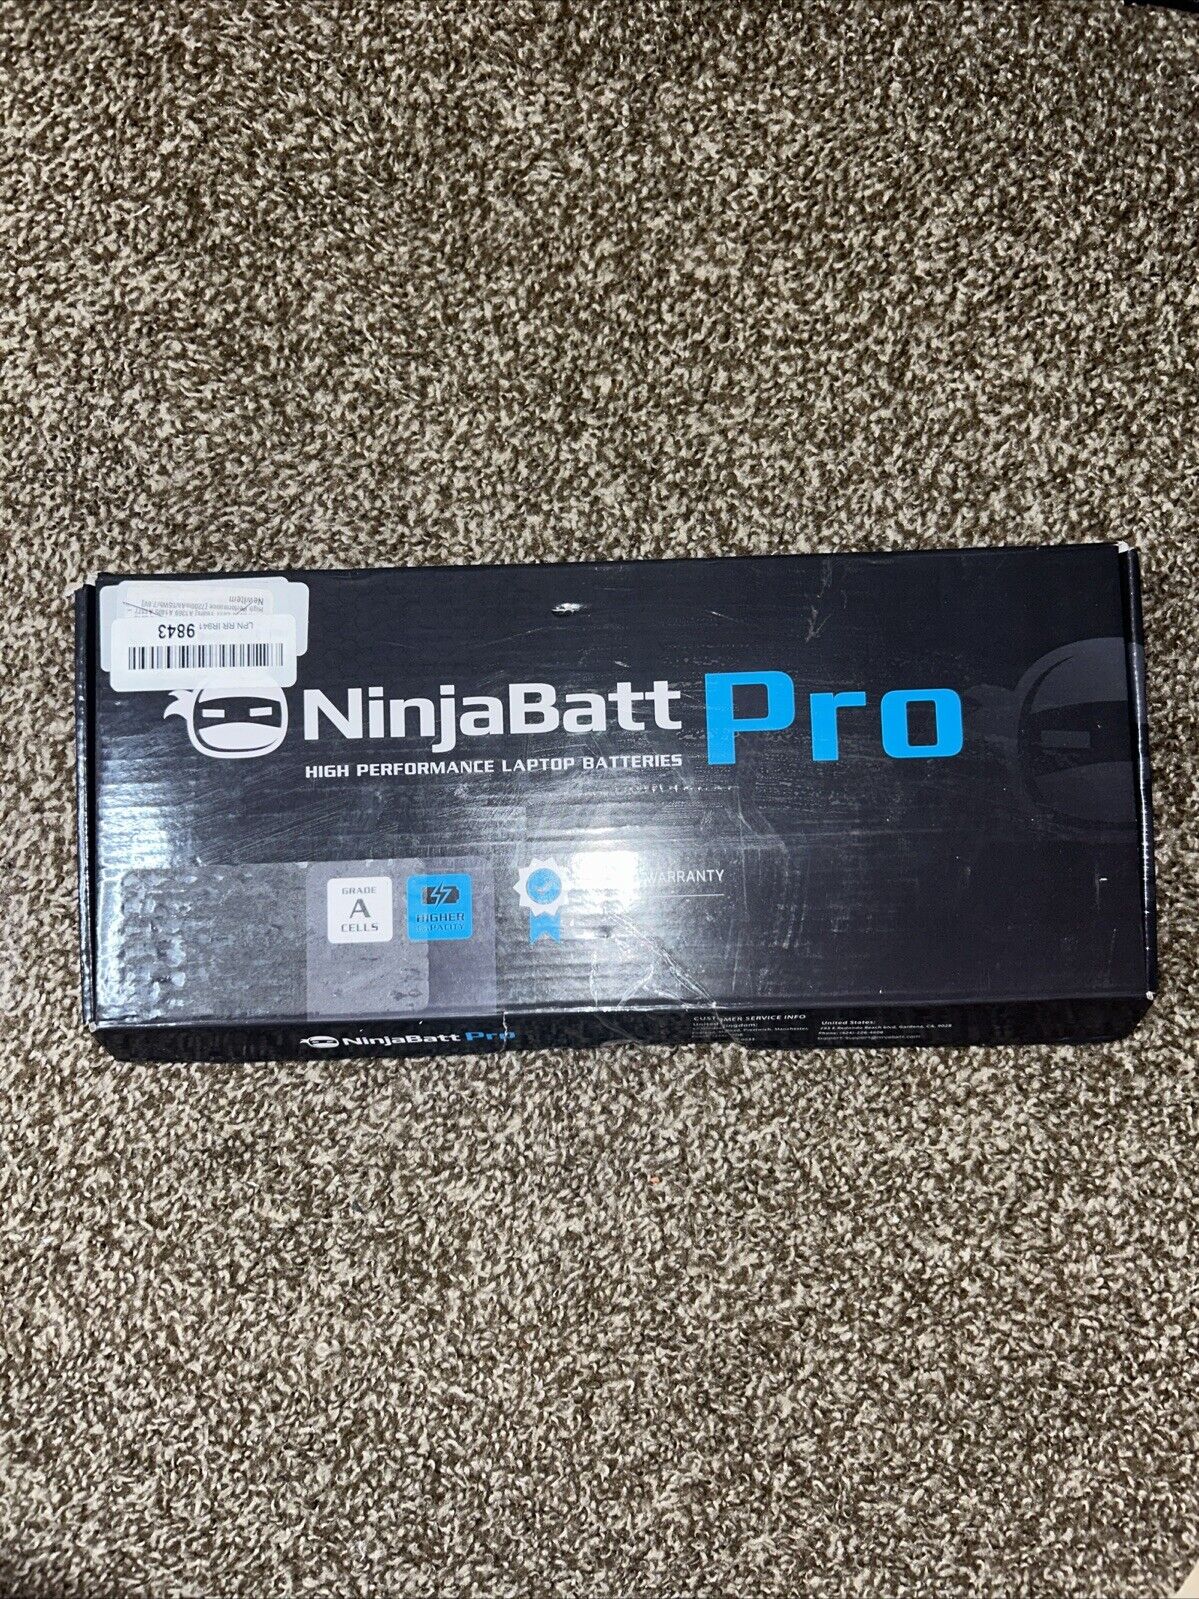 NinjaBatt Pro